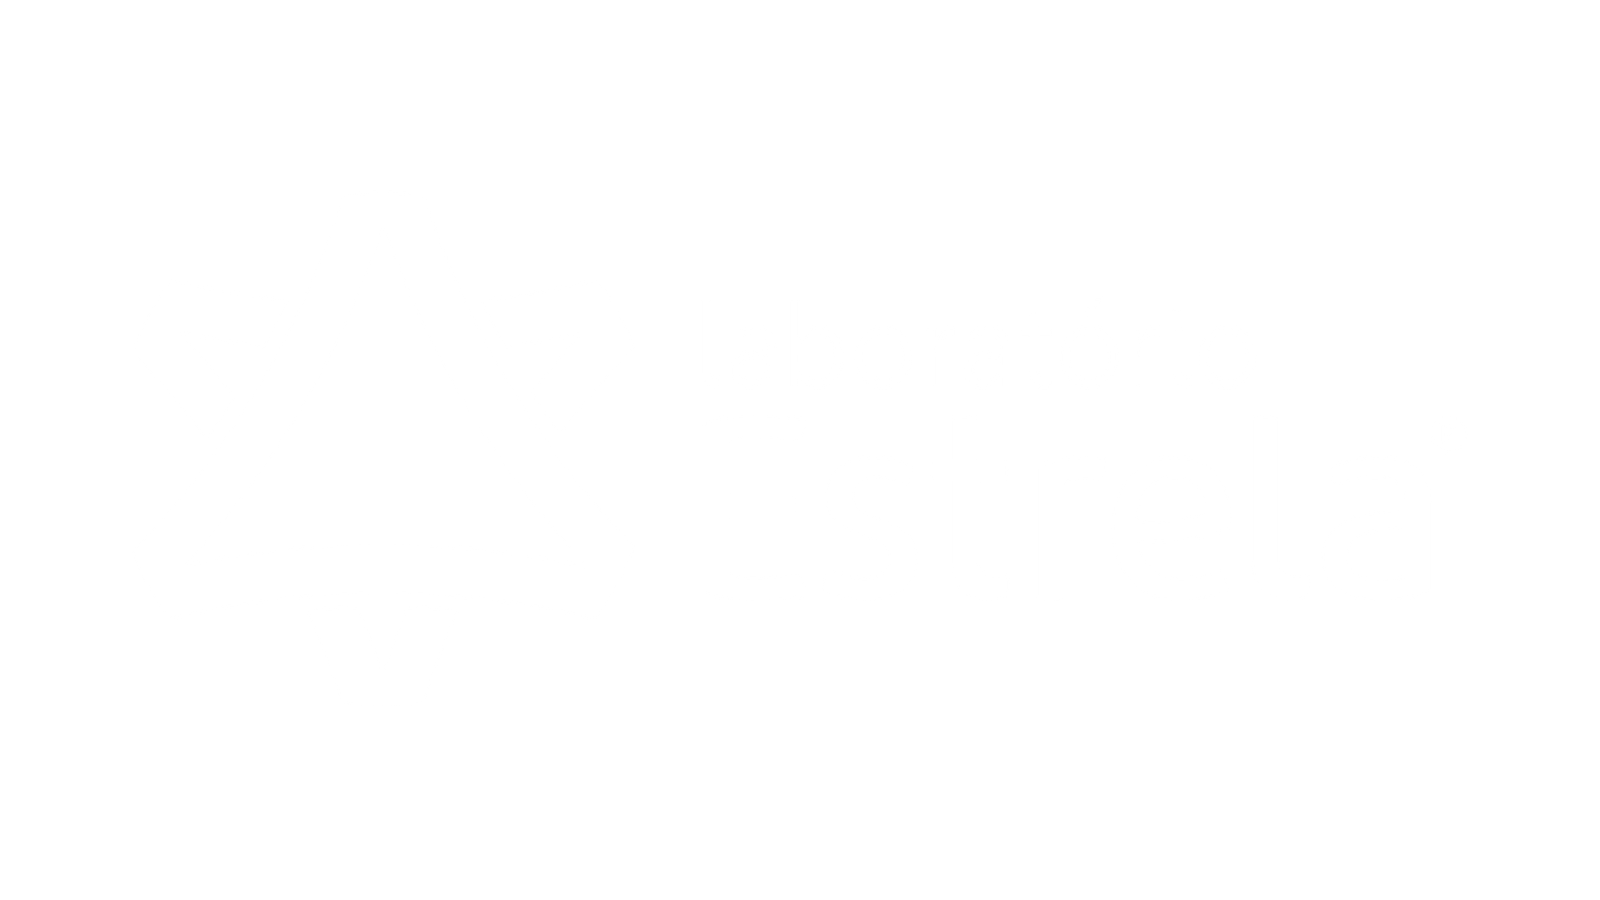 Stream Laboratório de exames do Bairro Estrela Dalva está fechado by Meu  Bairro em Foco